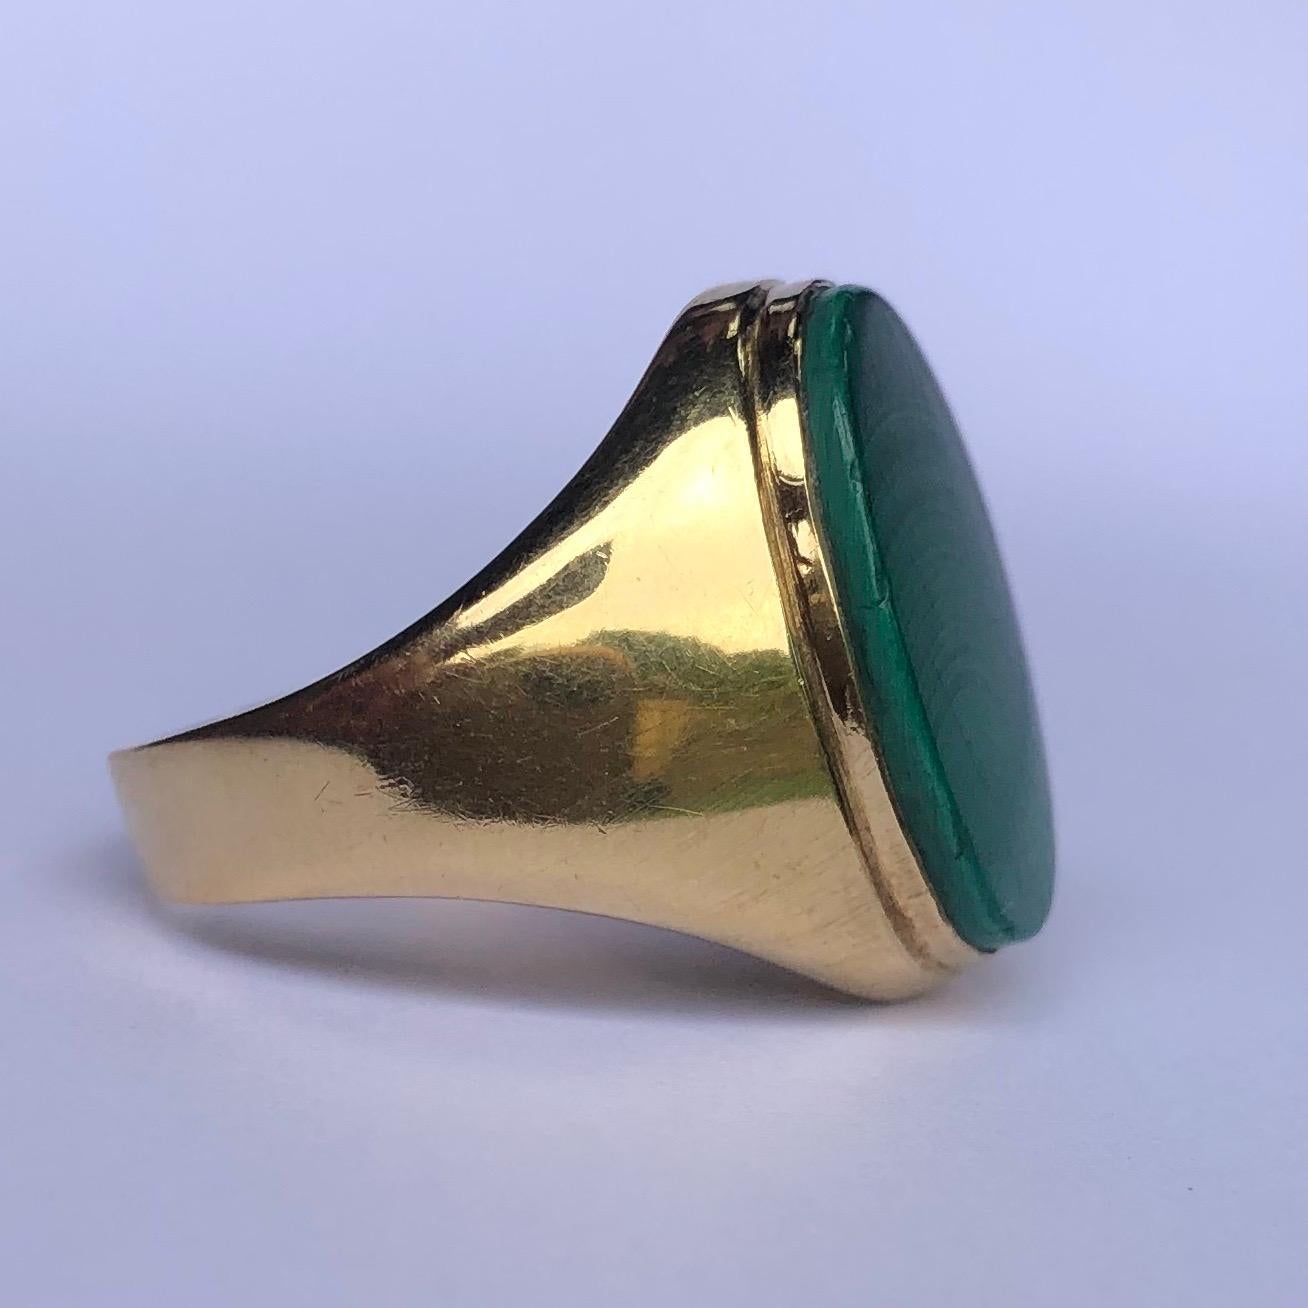 Der Malachitstein in diesem Ring aus 18-karätigem Gold leuchtet hell und ist von einem schönen Band durchzogen. Das Grün kommt durch das glänzende Gelbgold perfekt zur Geltung. 

Ring Größe: S oder 9
Stein Abmessungen: 18x13mm 

Gewicht: 5,6 g